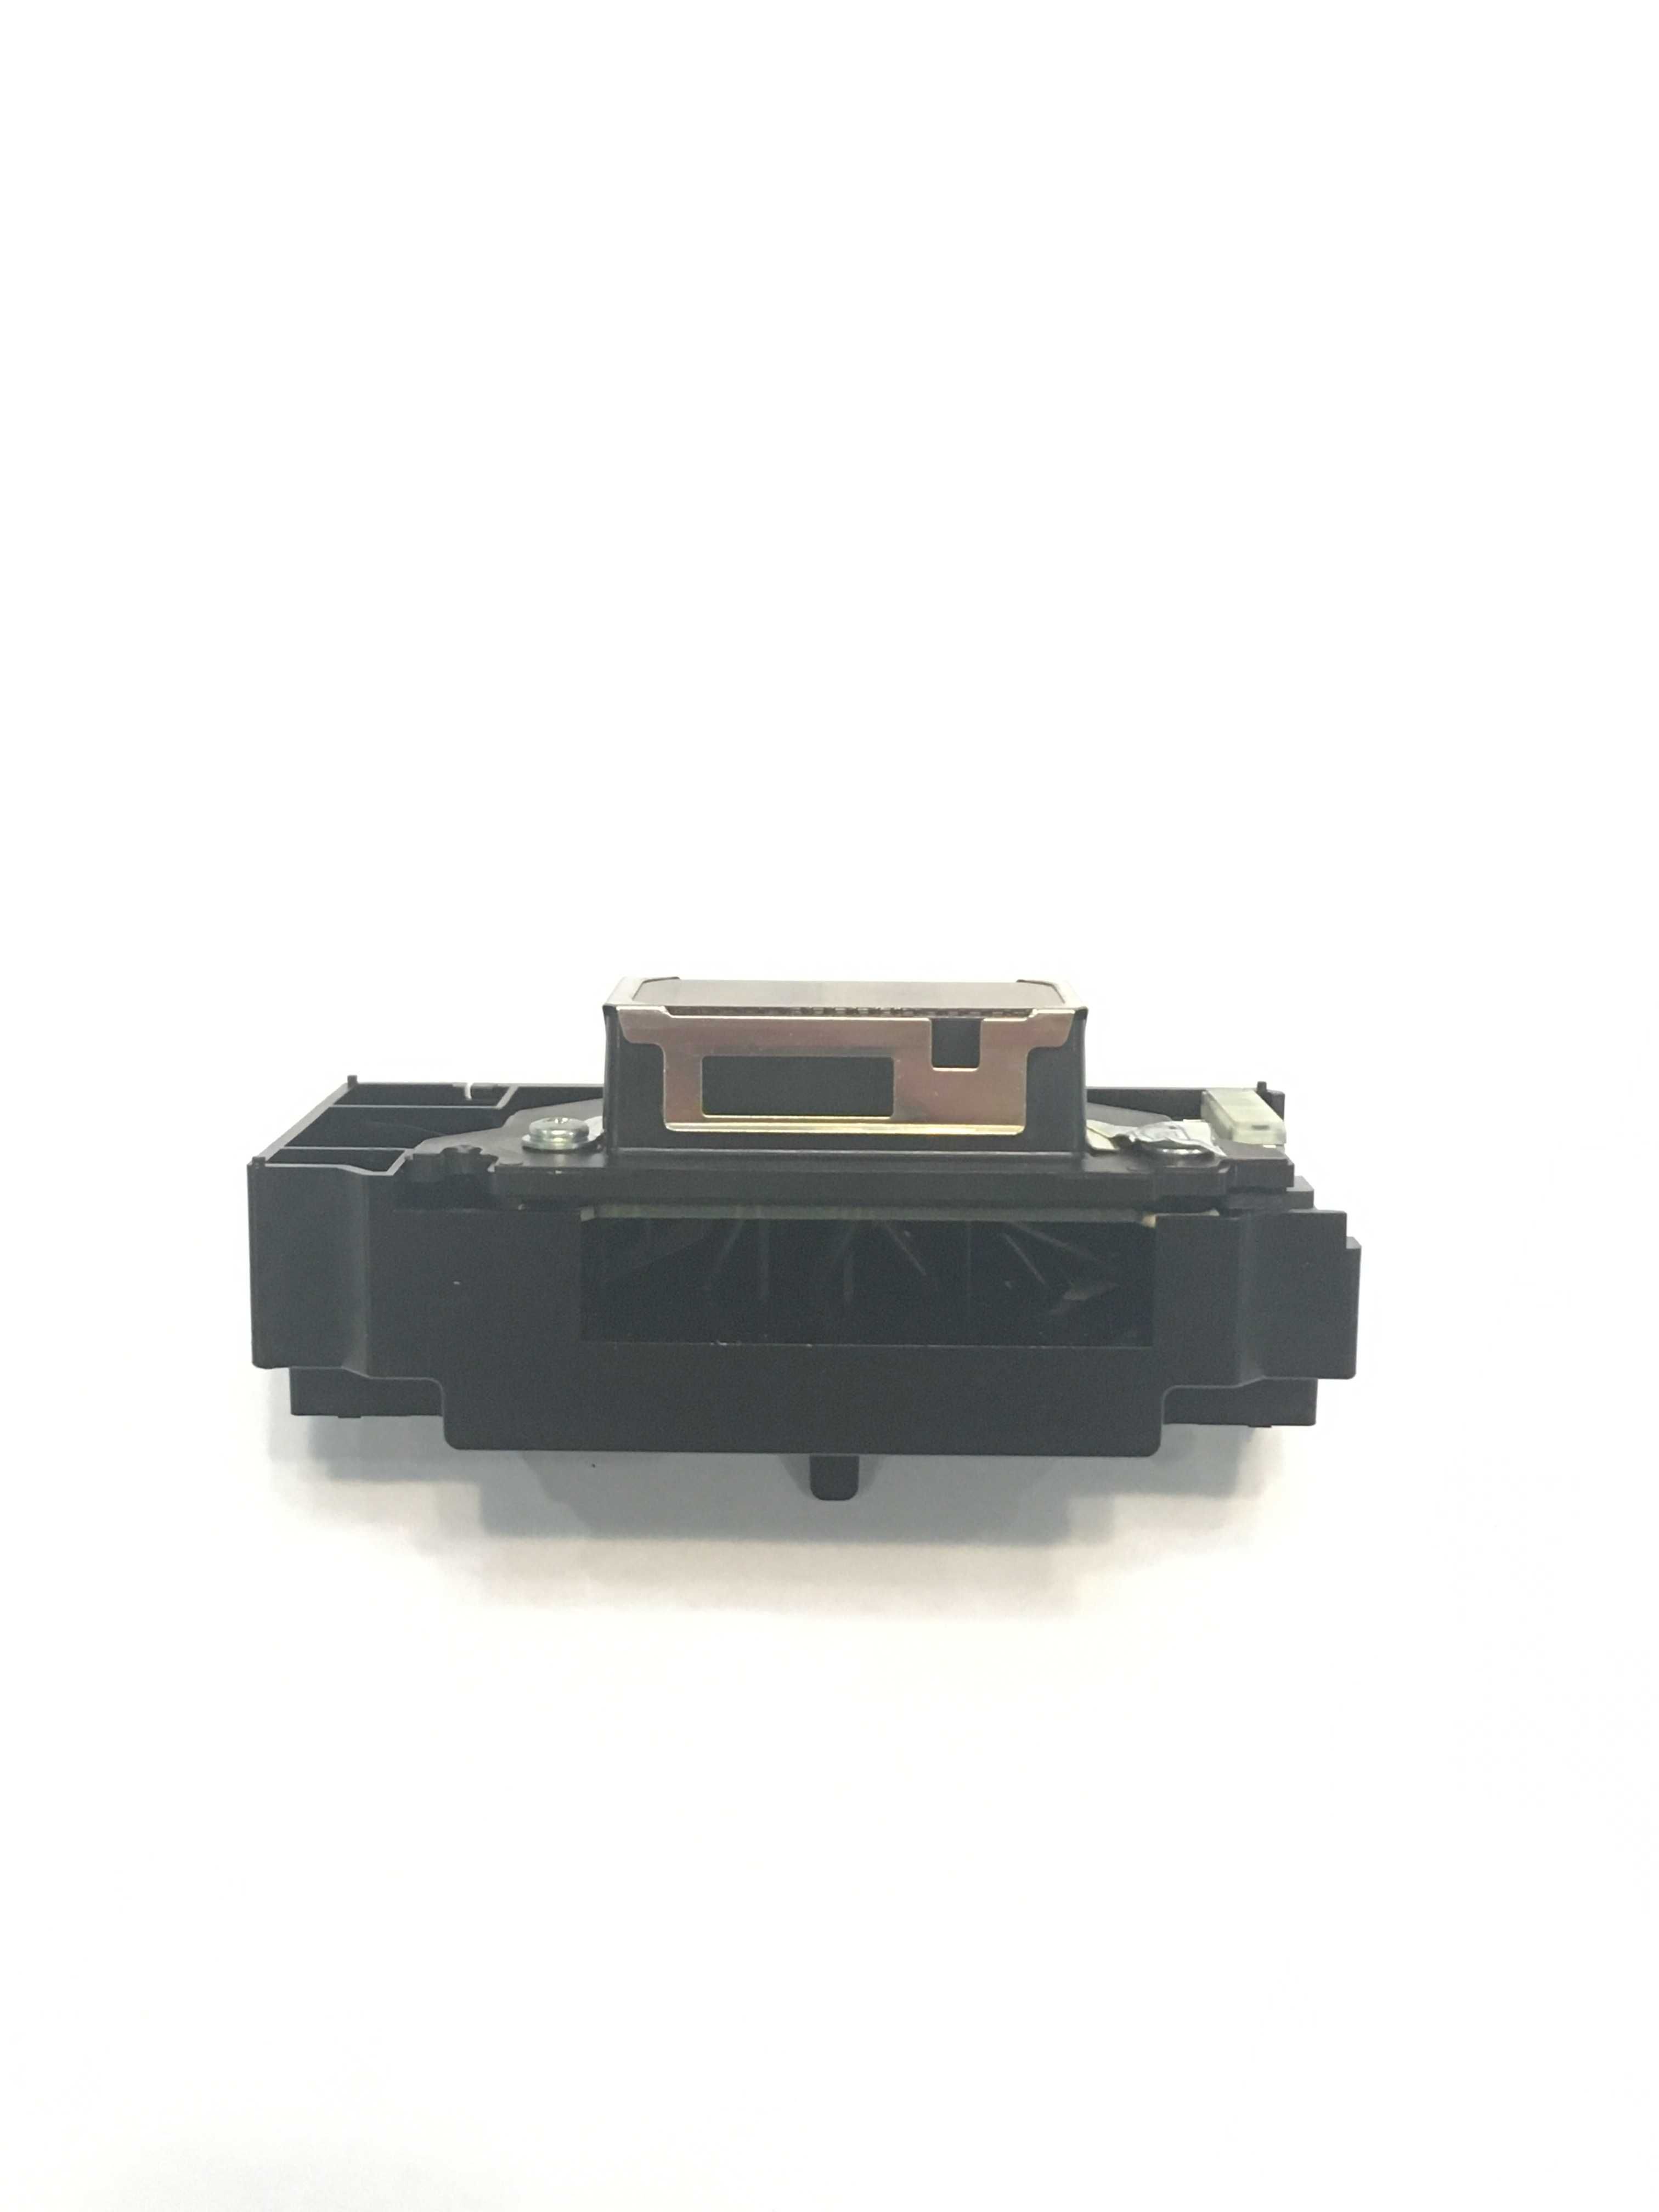 Друкуюча головка для принтерна Epson F138010 F138020 F138040 F138050